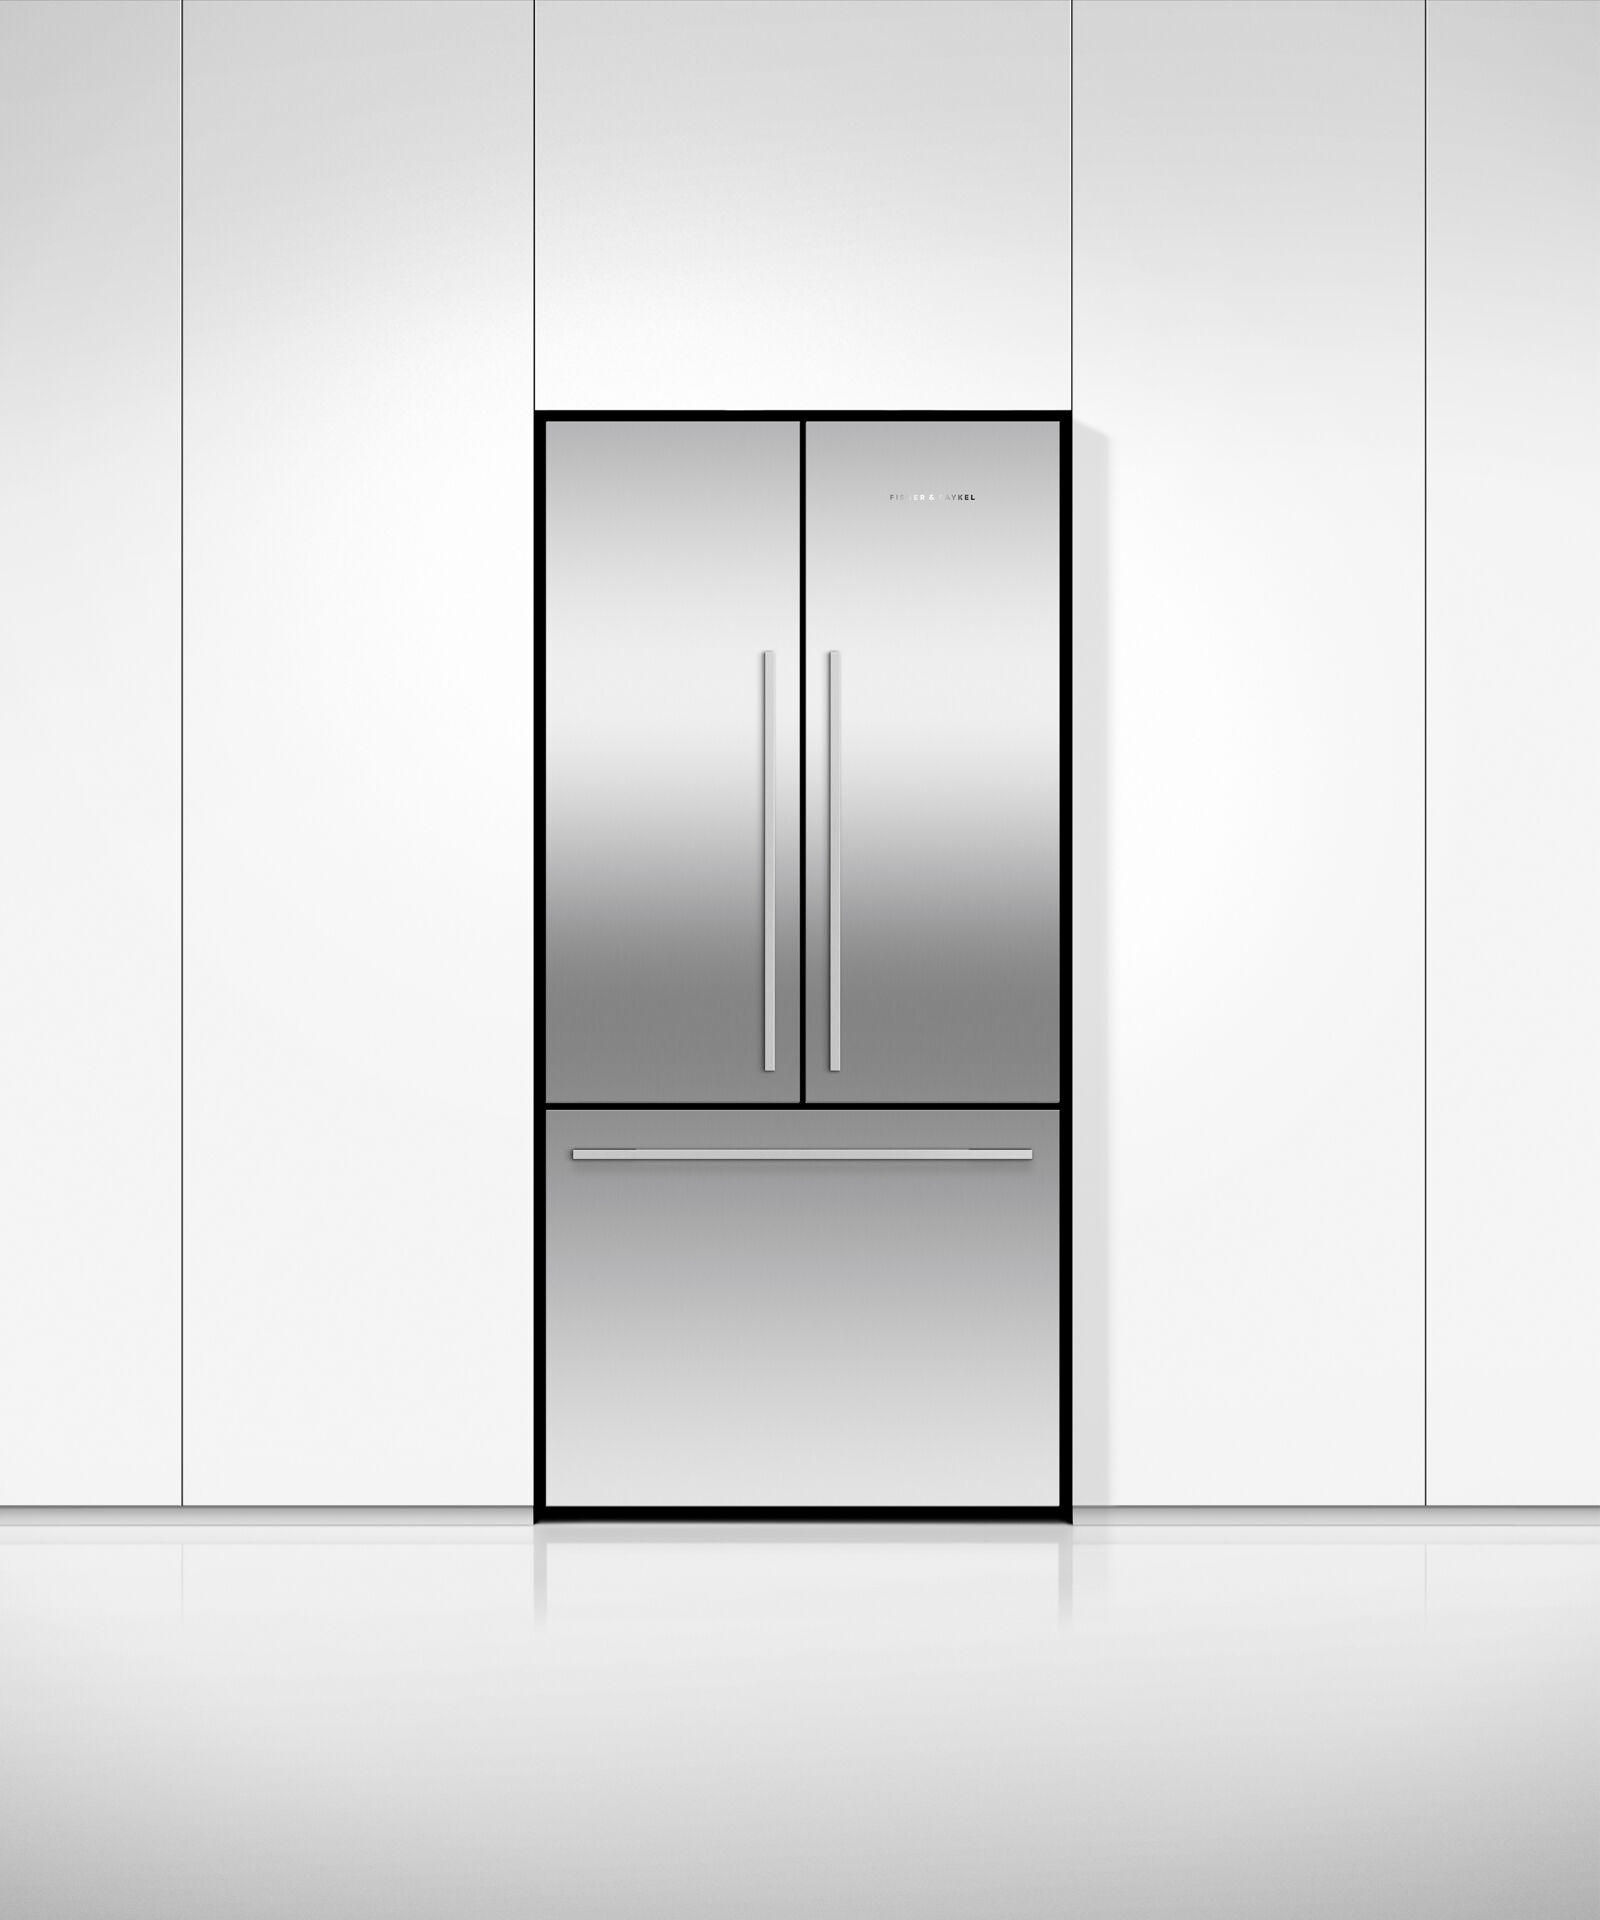 Freestanding French Door Refrigerator, 79cm gallery image 3.0